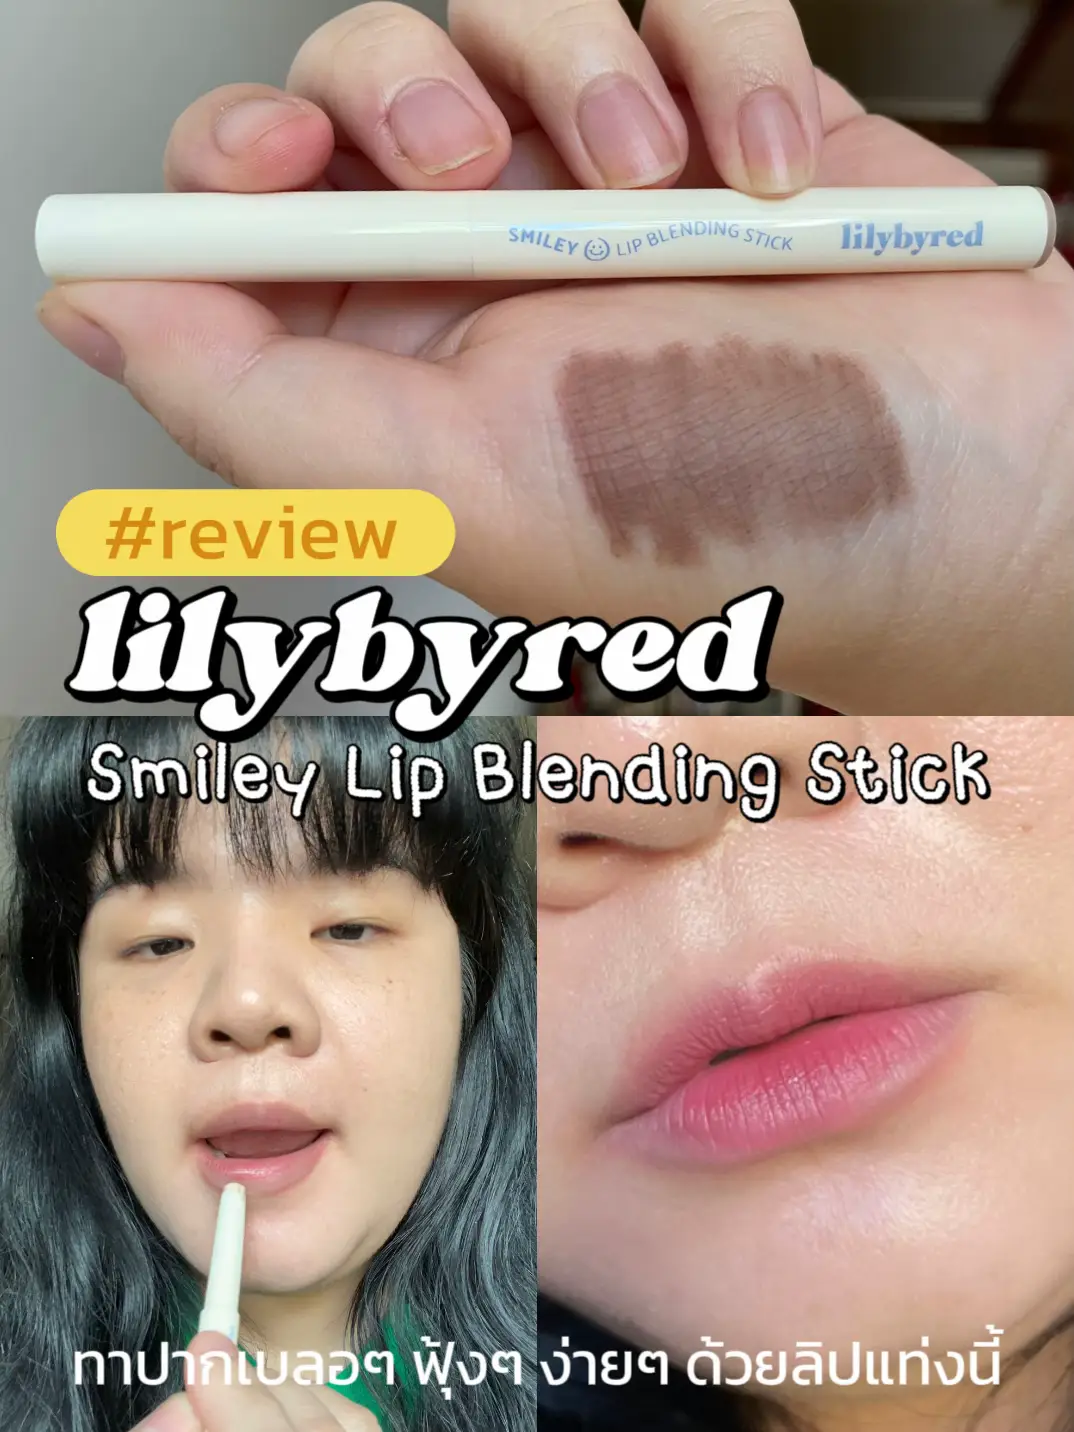 Smiley Lip Blending Stick